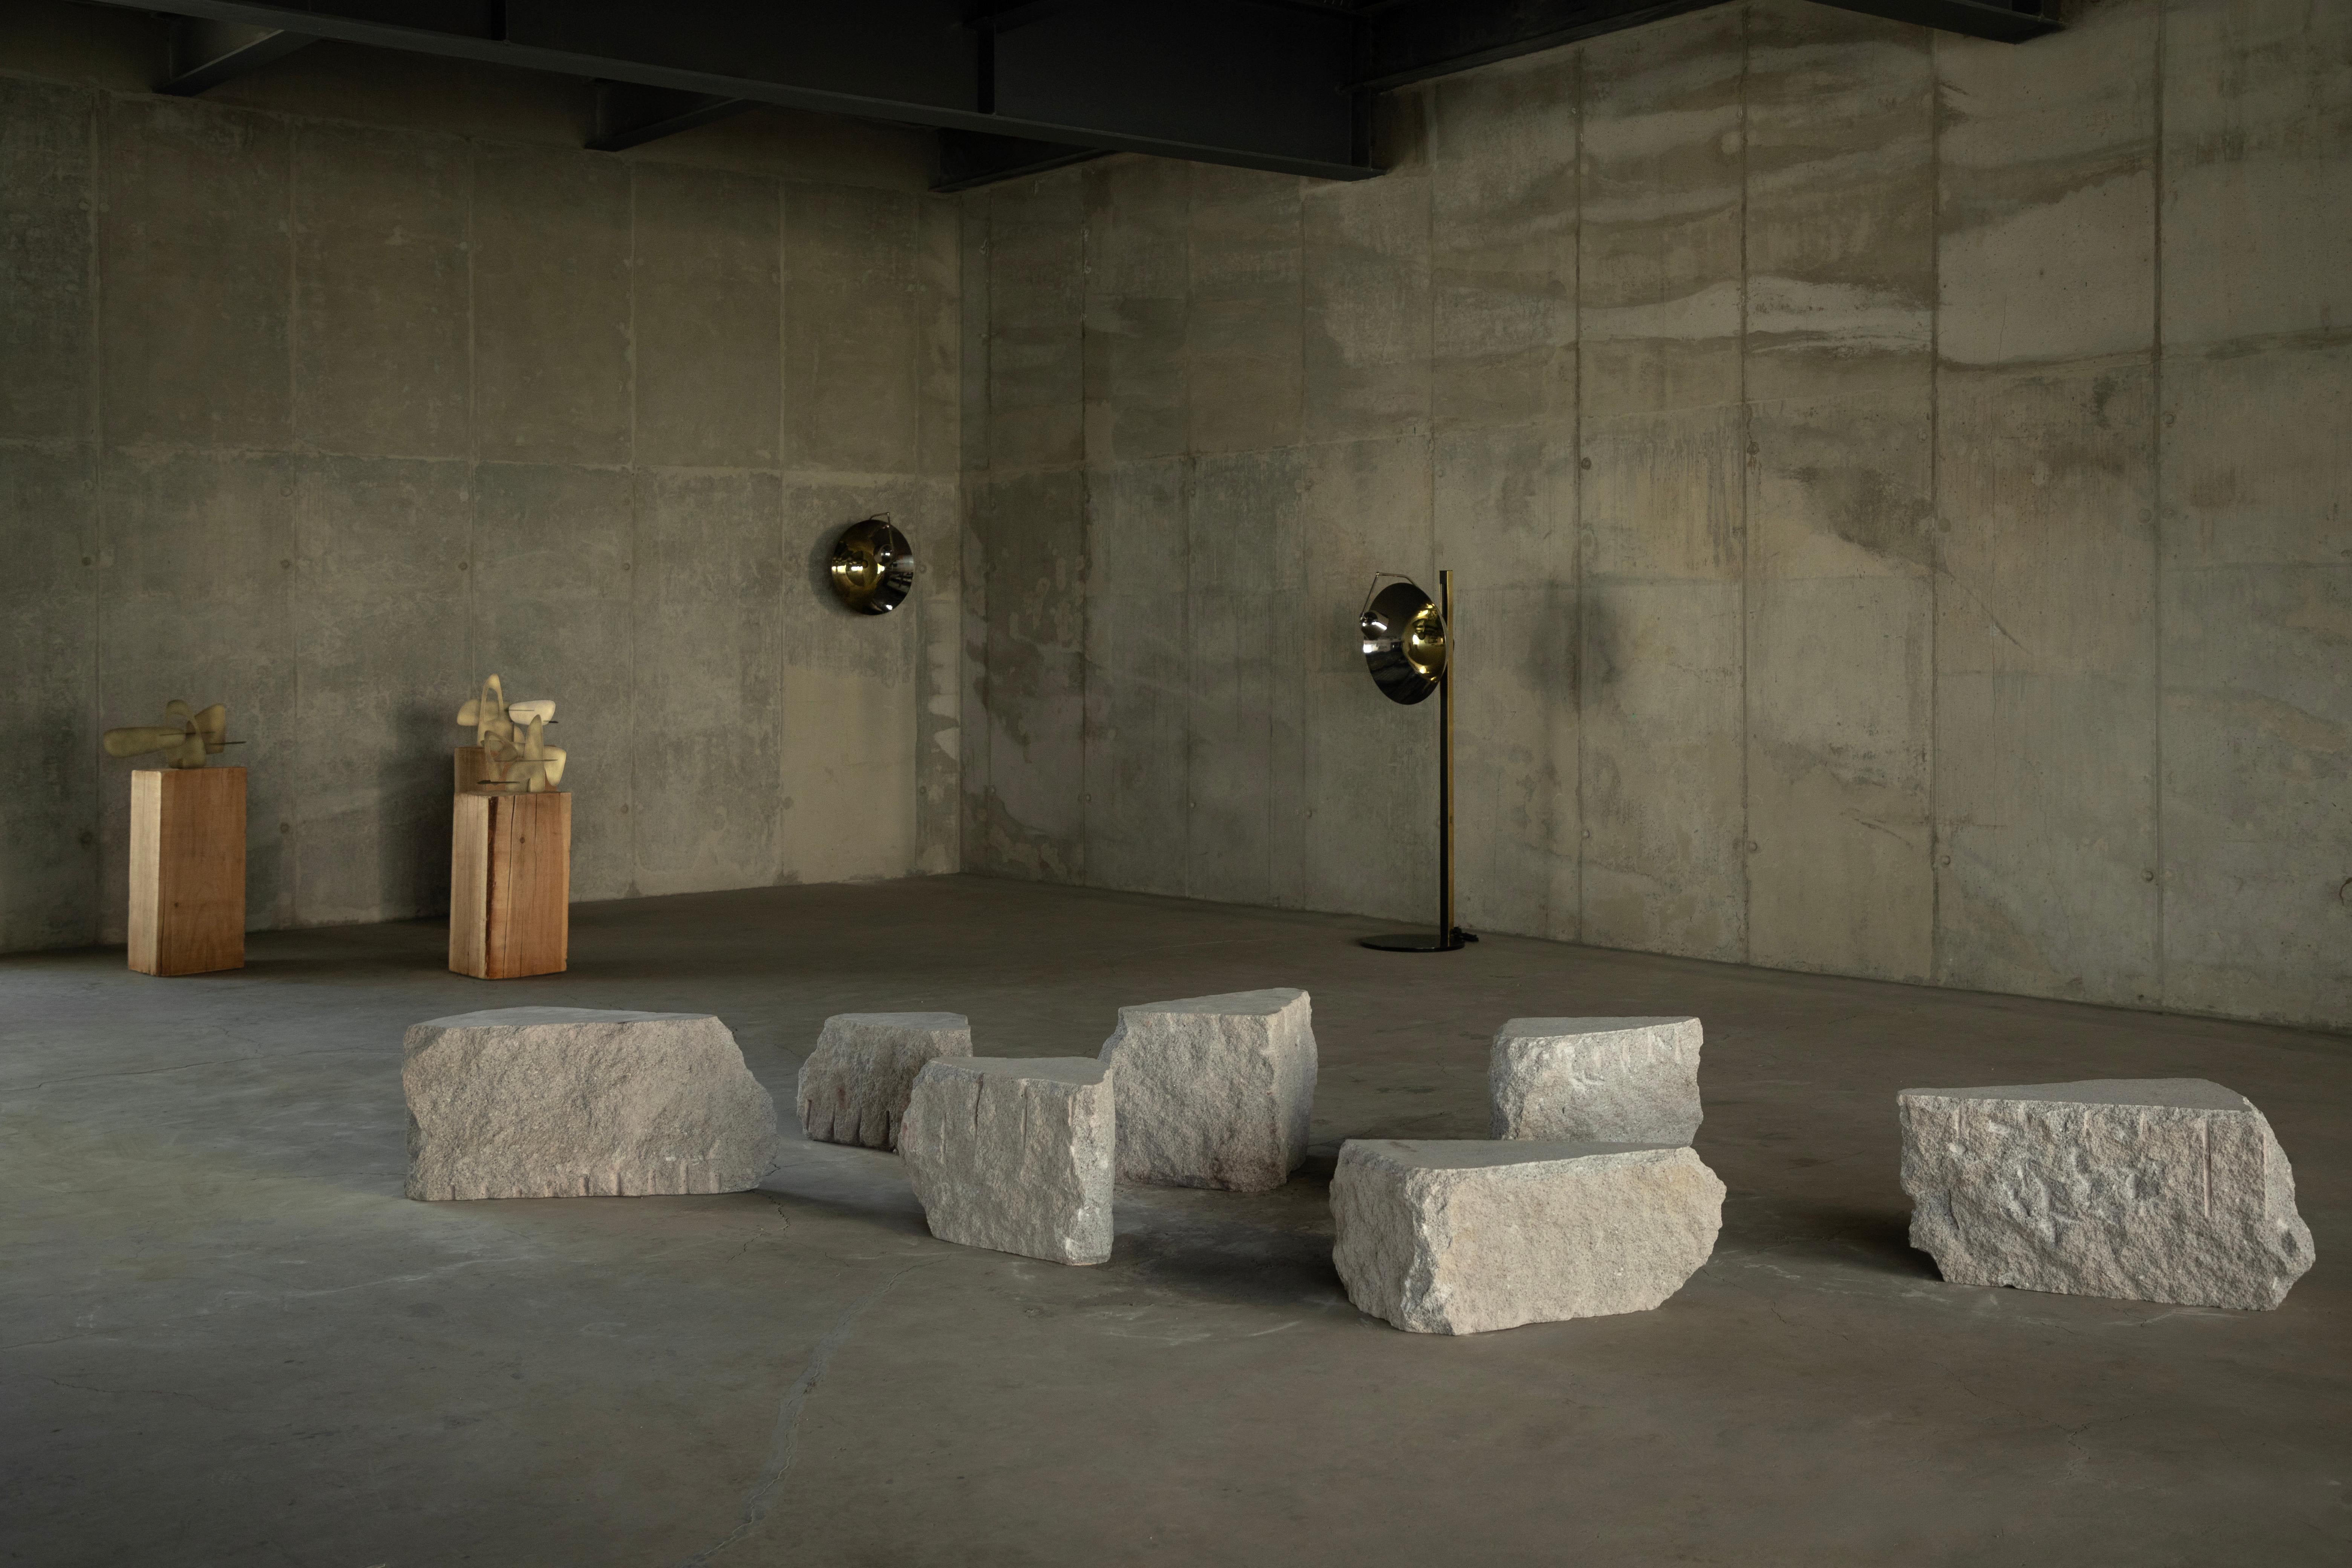 Laberinto Center Piece von Andres Monnier.
Abmessungen: T 90 x B 170 x H 40 cm
MATERIALIEN: Bruchsteine.

Andrés Monnier, geboren in Guadalajara, lebt in Ensenada, Mexiko. Sein Ziel ist es, skulpturale Werke zu schaffen, um durch die Synergie